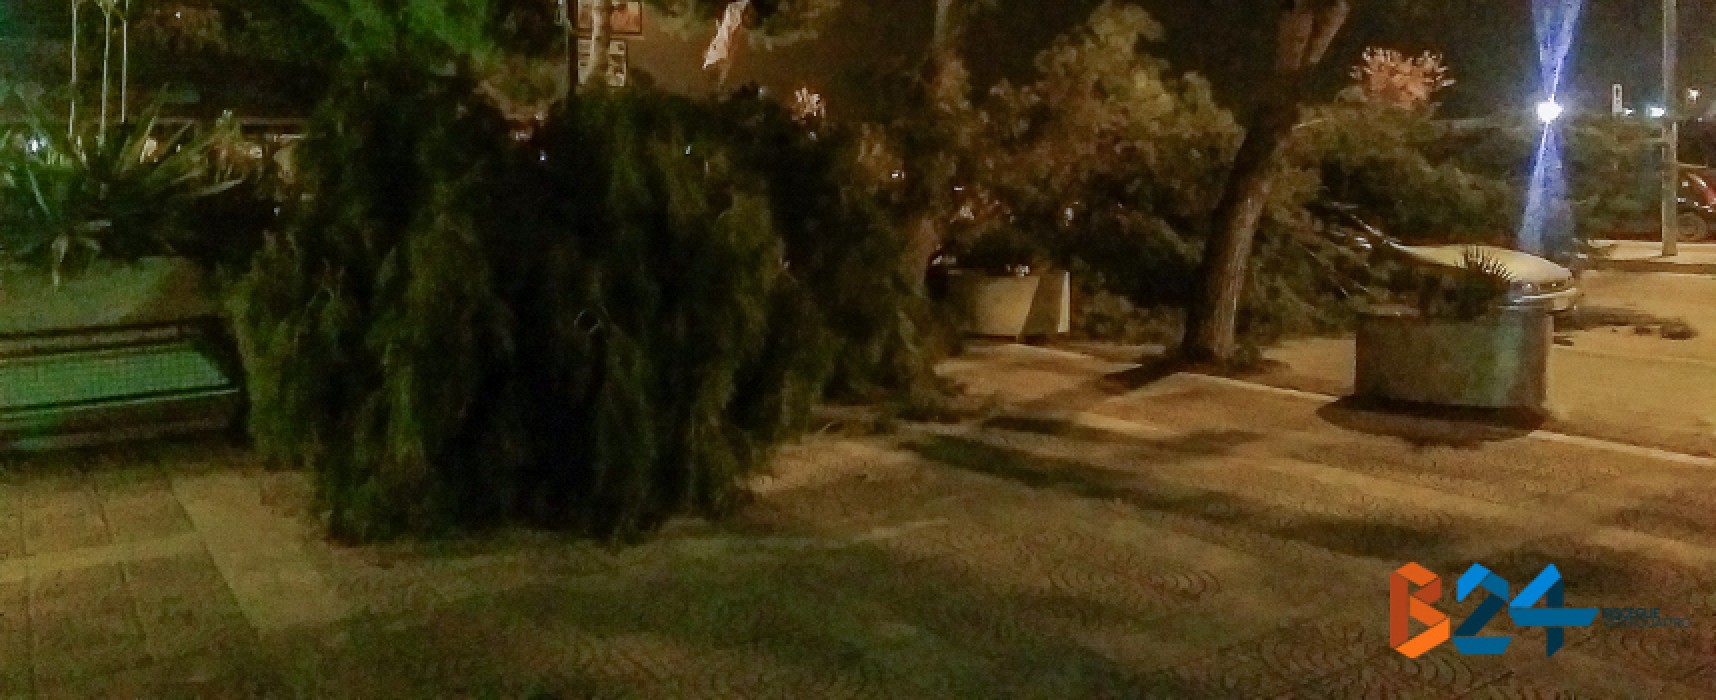 Due grossi rami di pino cedono in via San Martino a causa del forte vento / FOTO